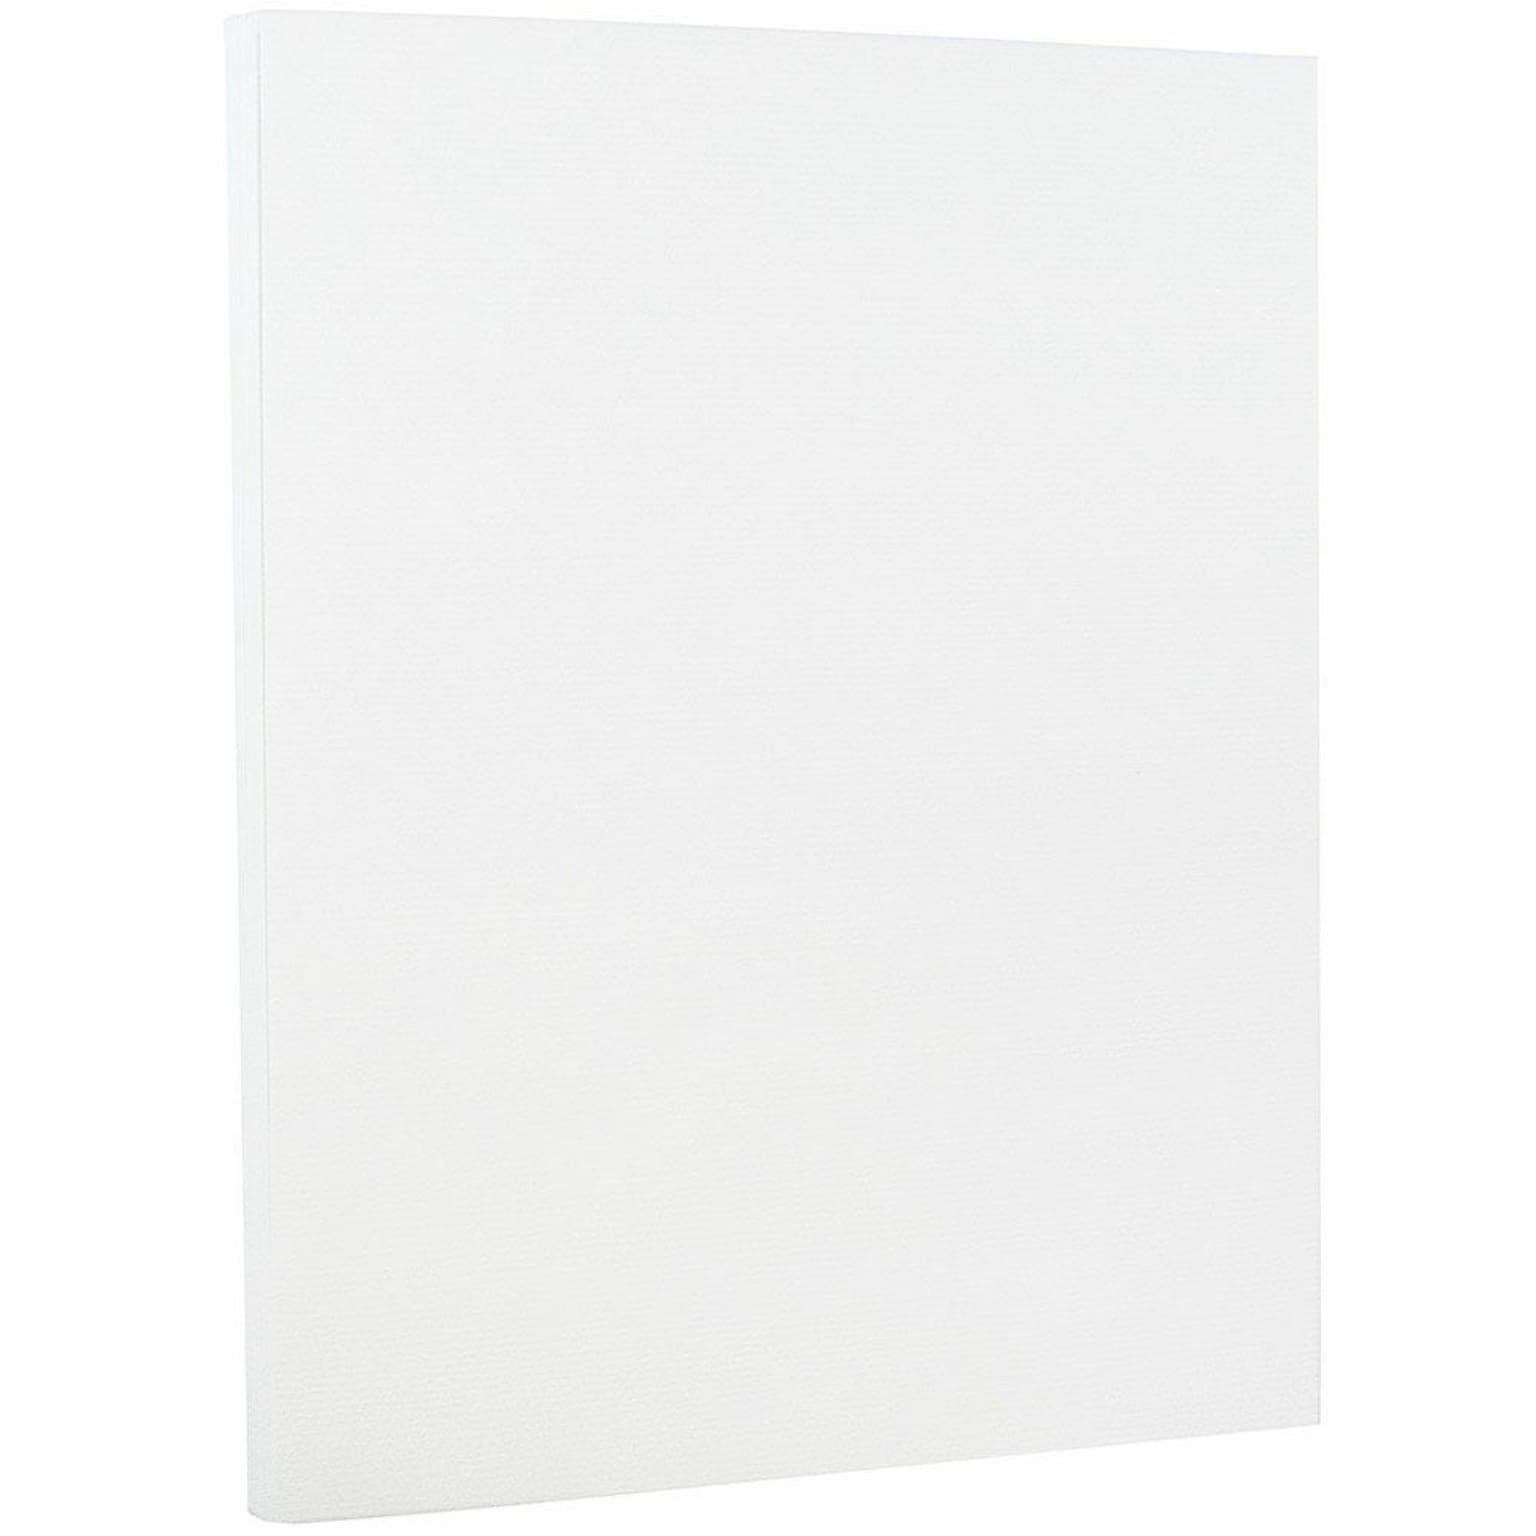 JAM PAPER Strathmore Cardstock, 88lb, Bright White Laid, 100/pack  (301005G)